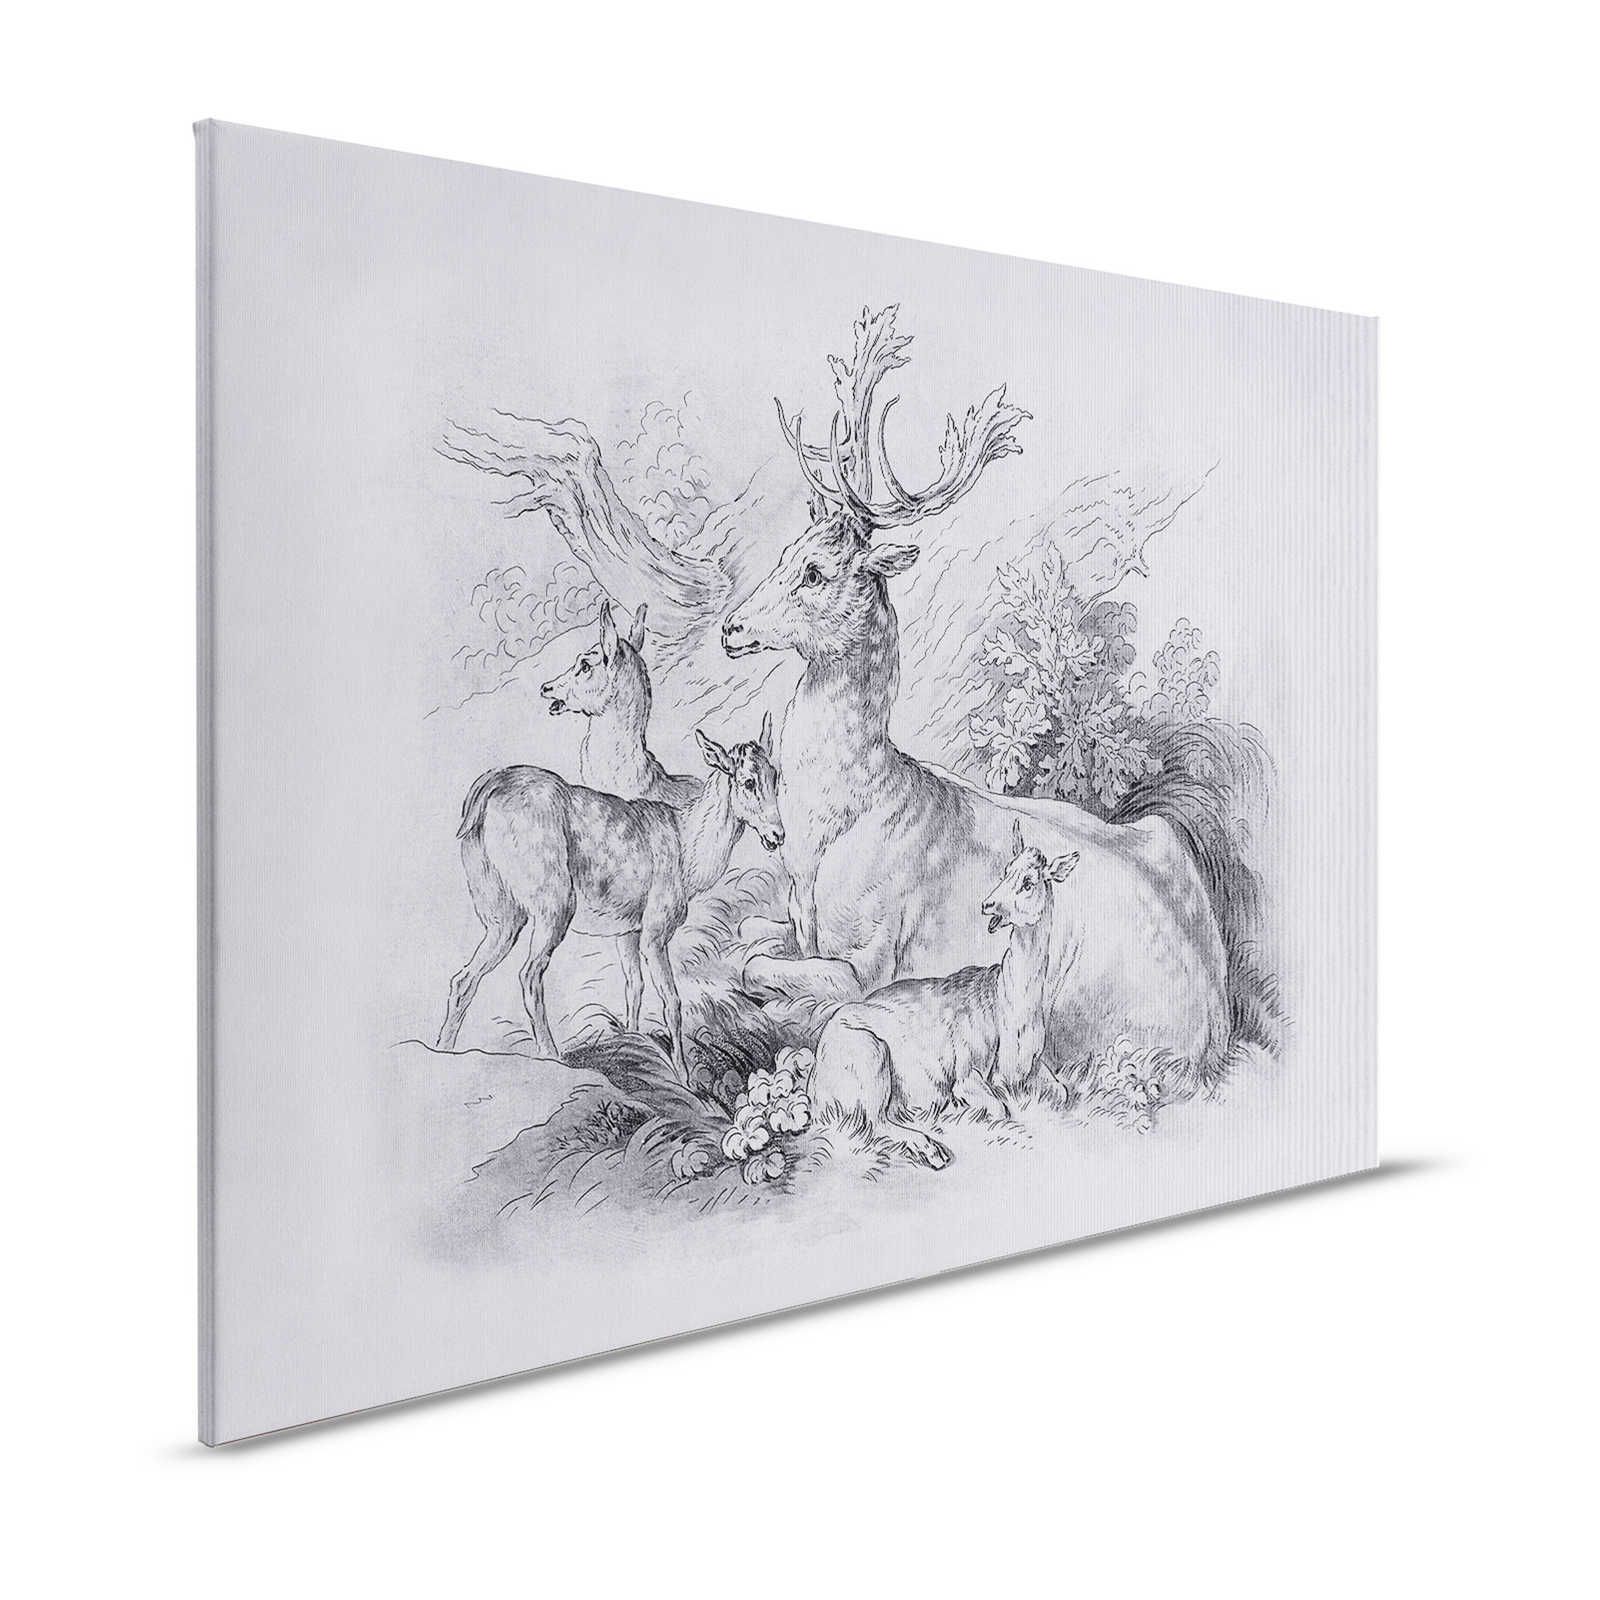 Sull'erba 2 - Quadro su tela Cervo e Cervo Disegno vintage in grigio - 1,20 m x 0,80 m
